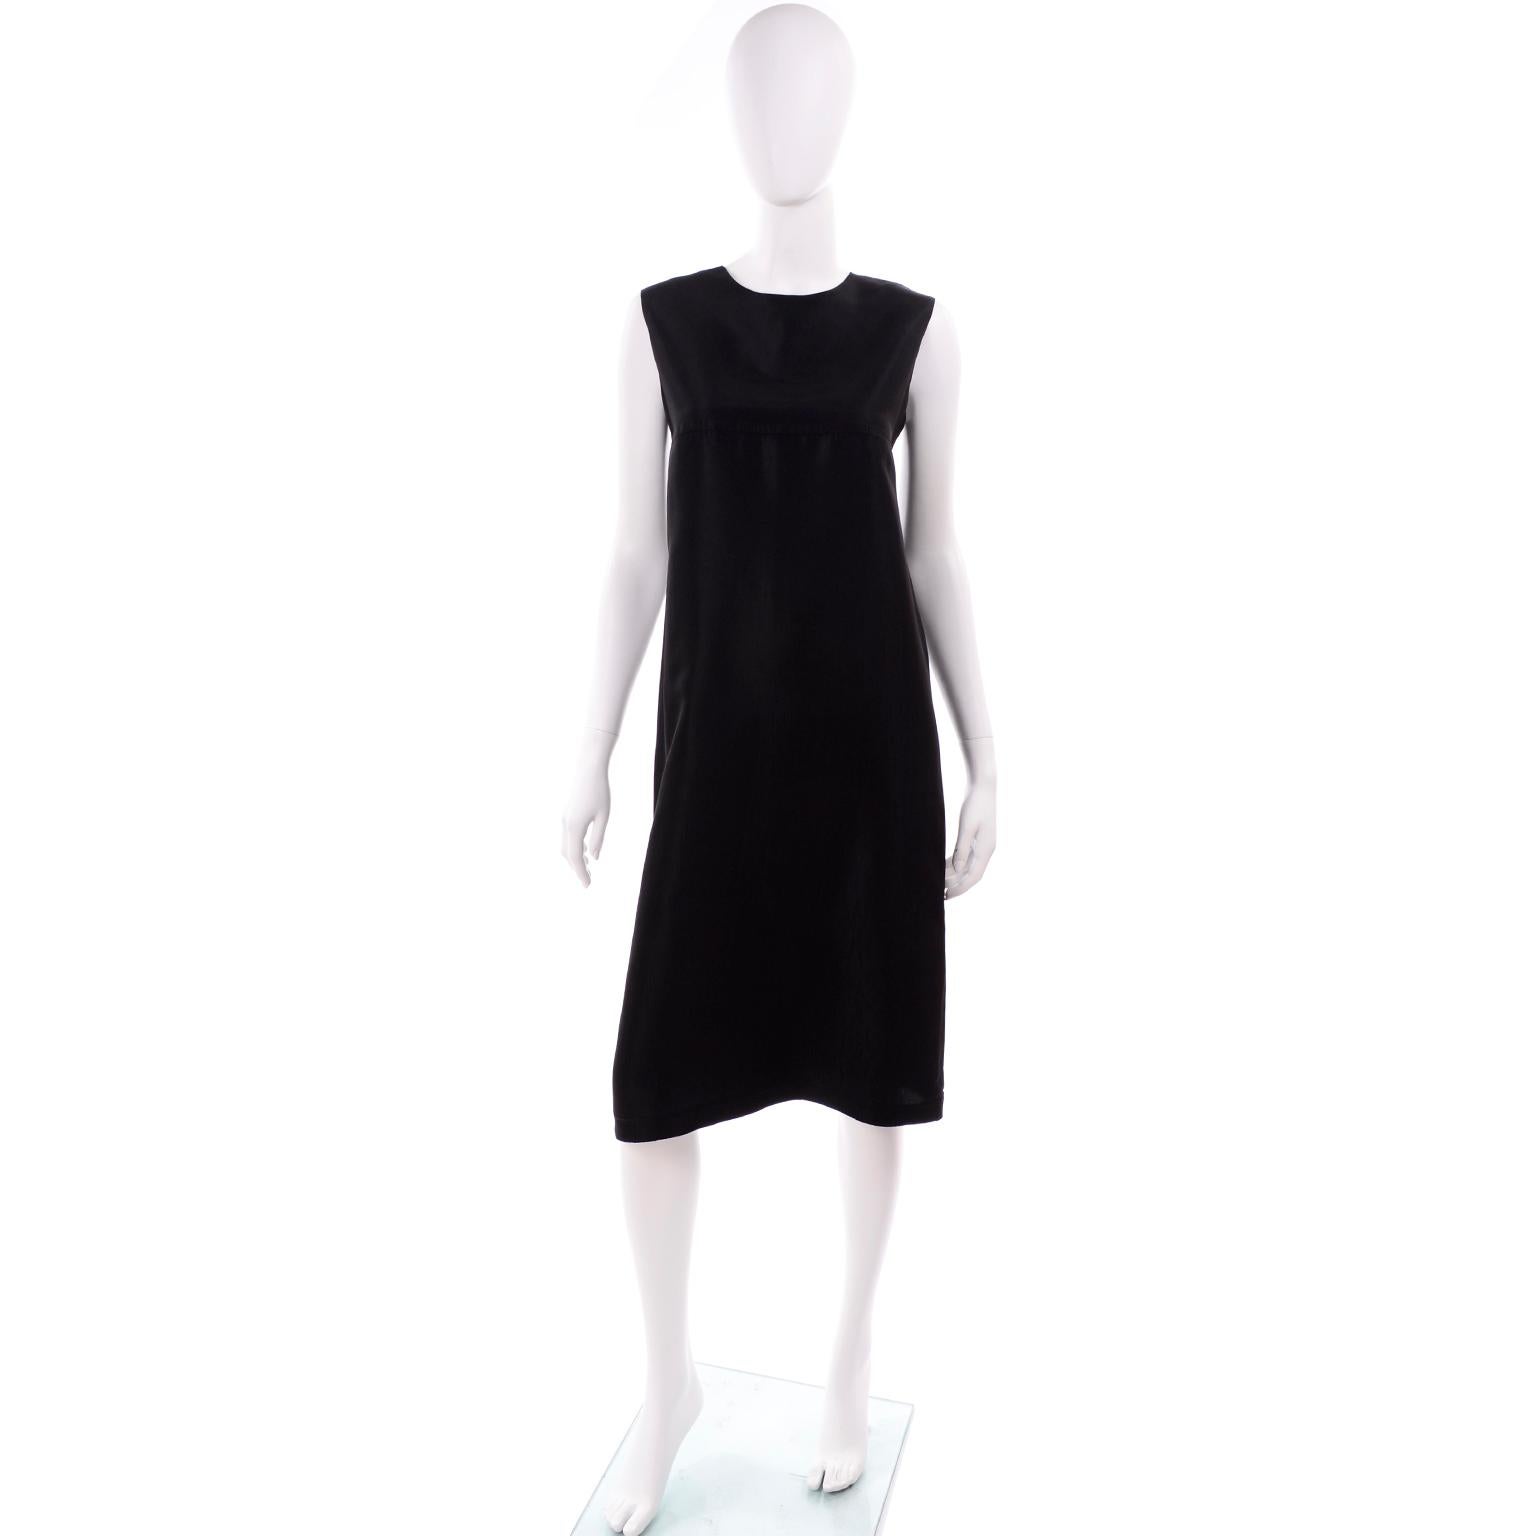 Dies ist ein atemberaubendes, minimalistisches Kleid von Yohji Yamamoto +Noir. Es ist aus einer schwarzen Viskose- oder Seidenmischung gefertigt, die robust und blickdicht ist. Der Stoff hat eine subtile Struktur, die ihm eine gewisse Dimension